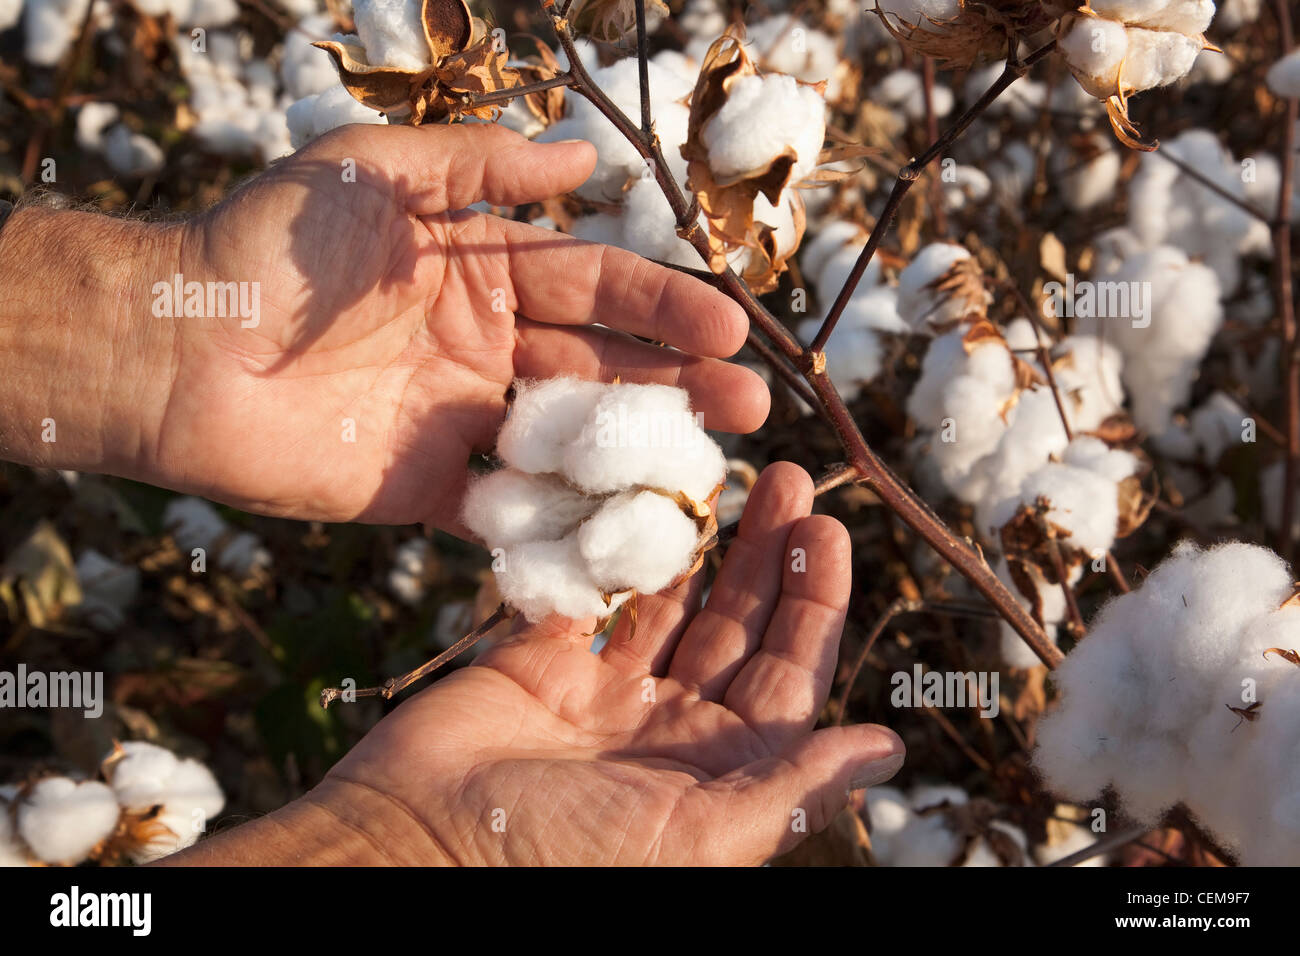 Un contadino (coltivatori) mano mantiene aperta la coppia ad alta resa bolls cotone in fase di mietitura come egli ispeziona il suo raccolto / Arkansas, Stati Uniti d'America. Foto Stock